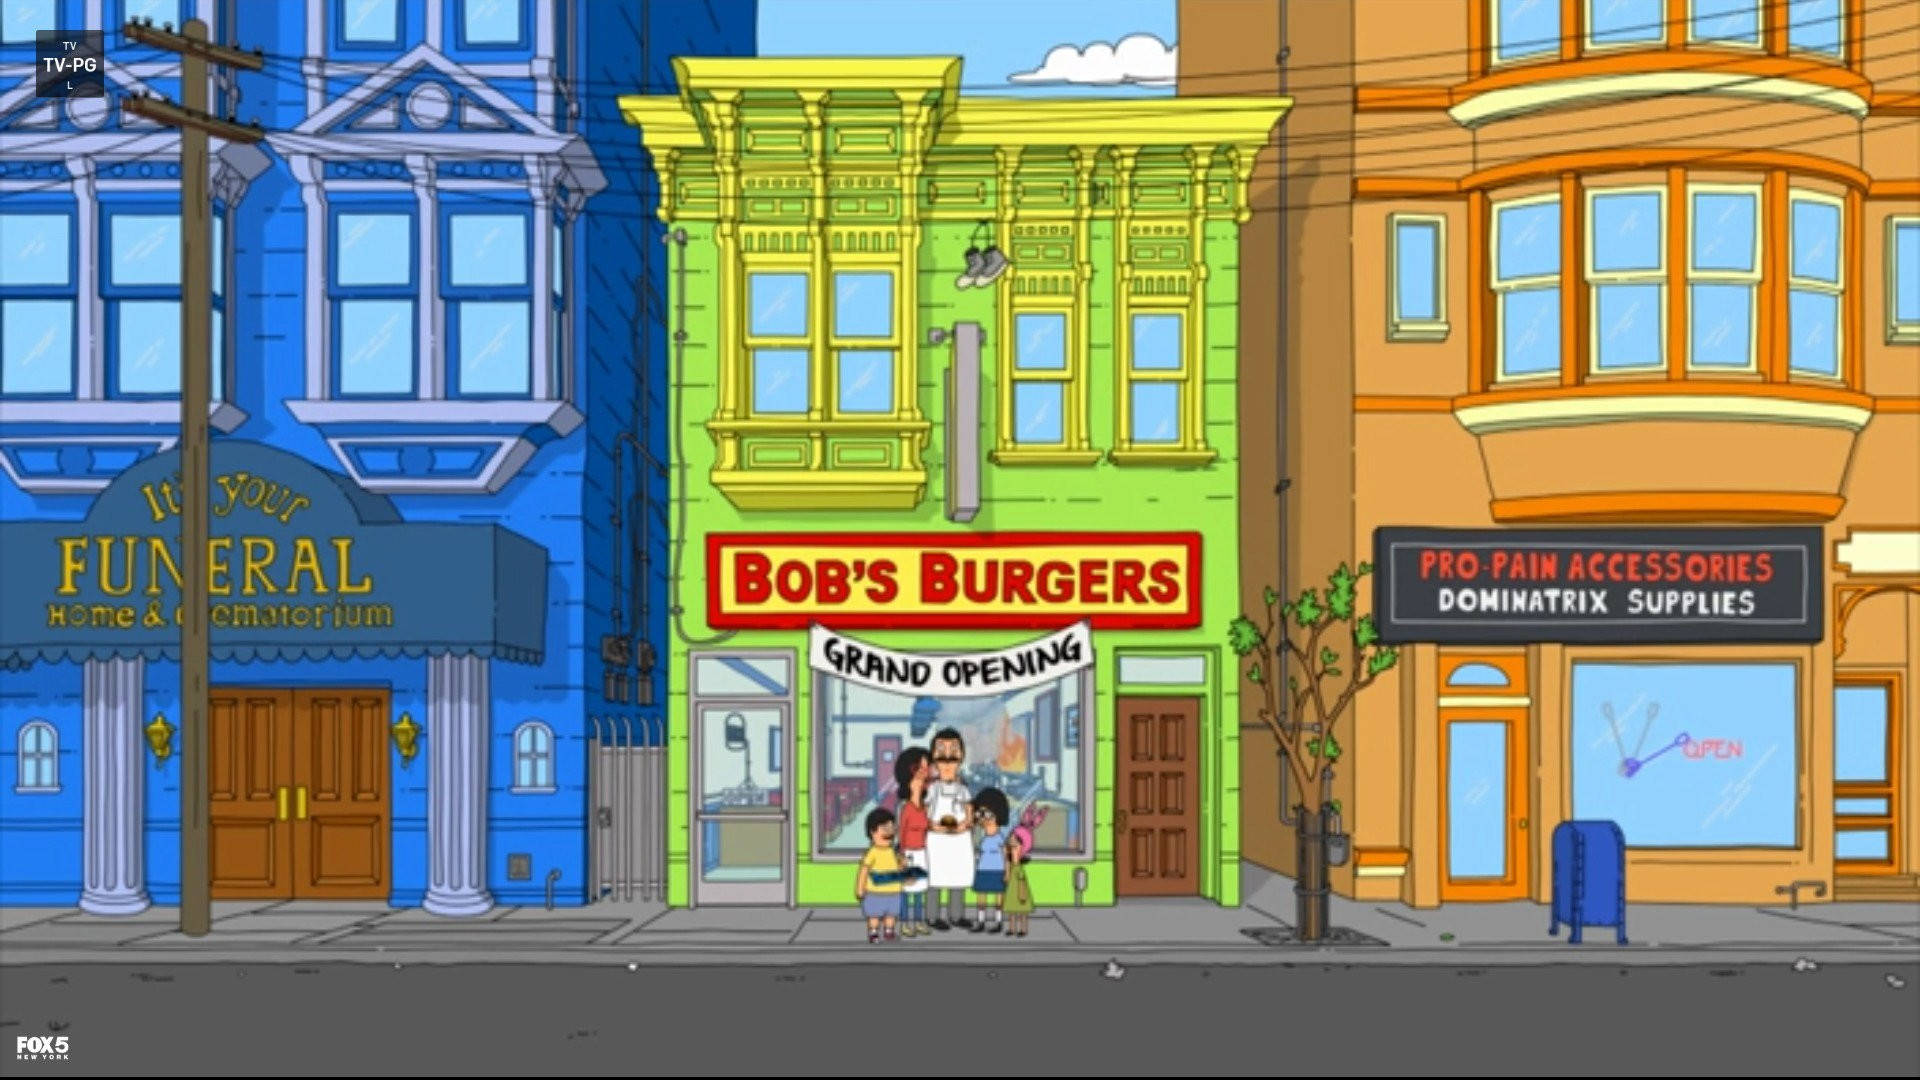 Bobs Burgers In Between Two Buildings